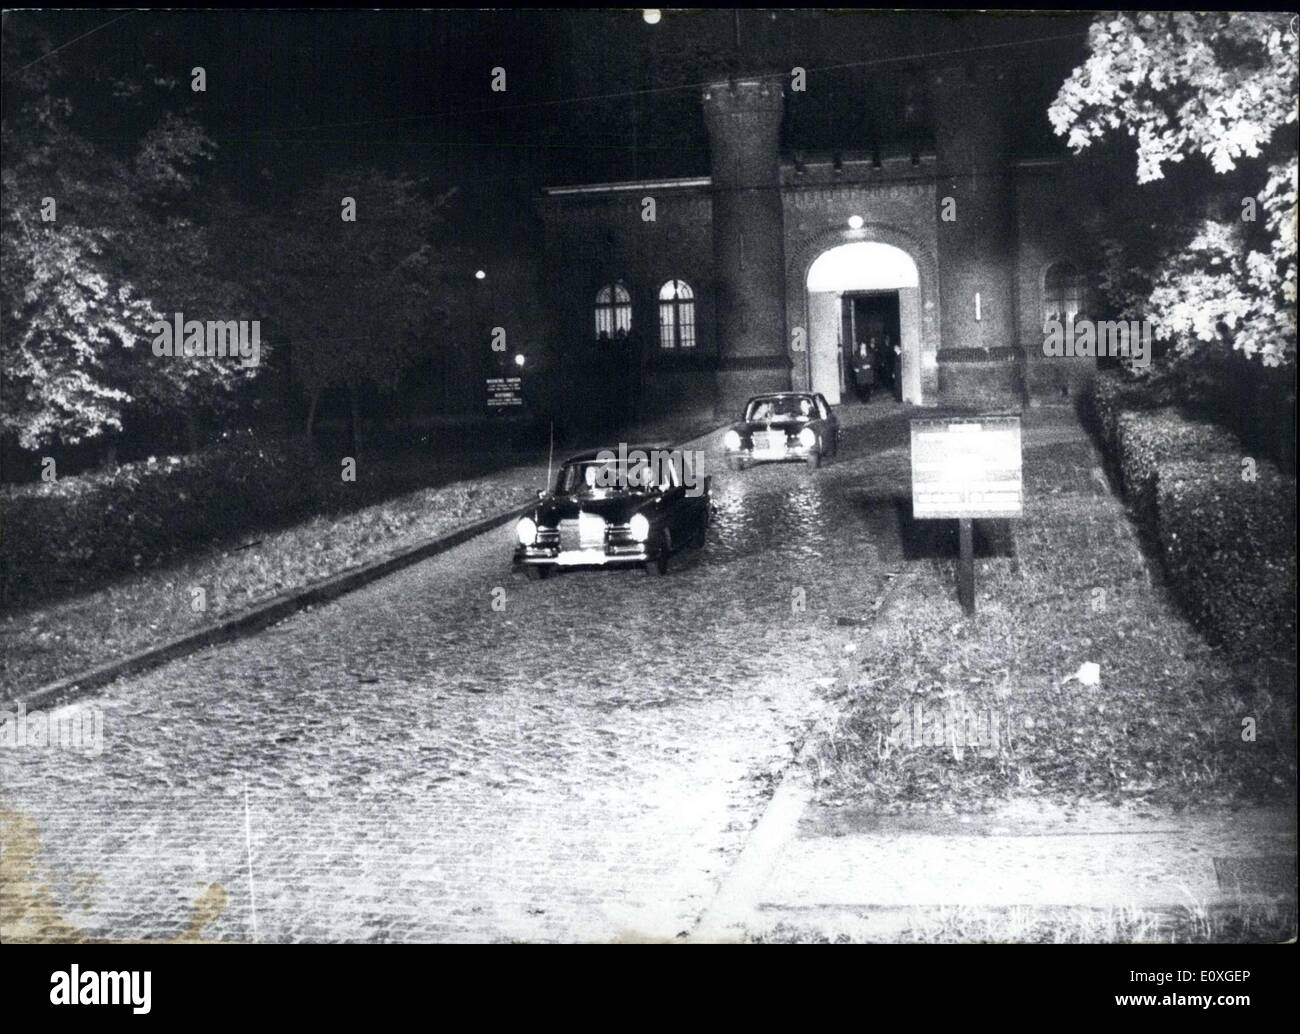 Ottobre 01, 1966 - Il Ministro ha respinto per l armamento Albert Spaer dopo il suo rilascio dalla prigione di Spandau dopo vent'anni. A mezzanotte - da Spandau prigione in un'auto completamente chiusa. Foto Stock